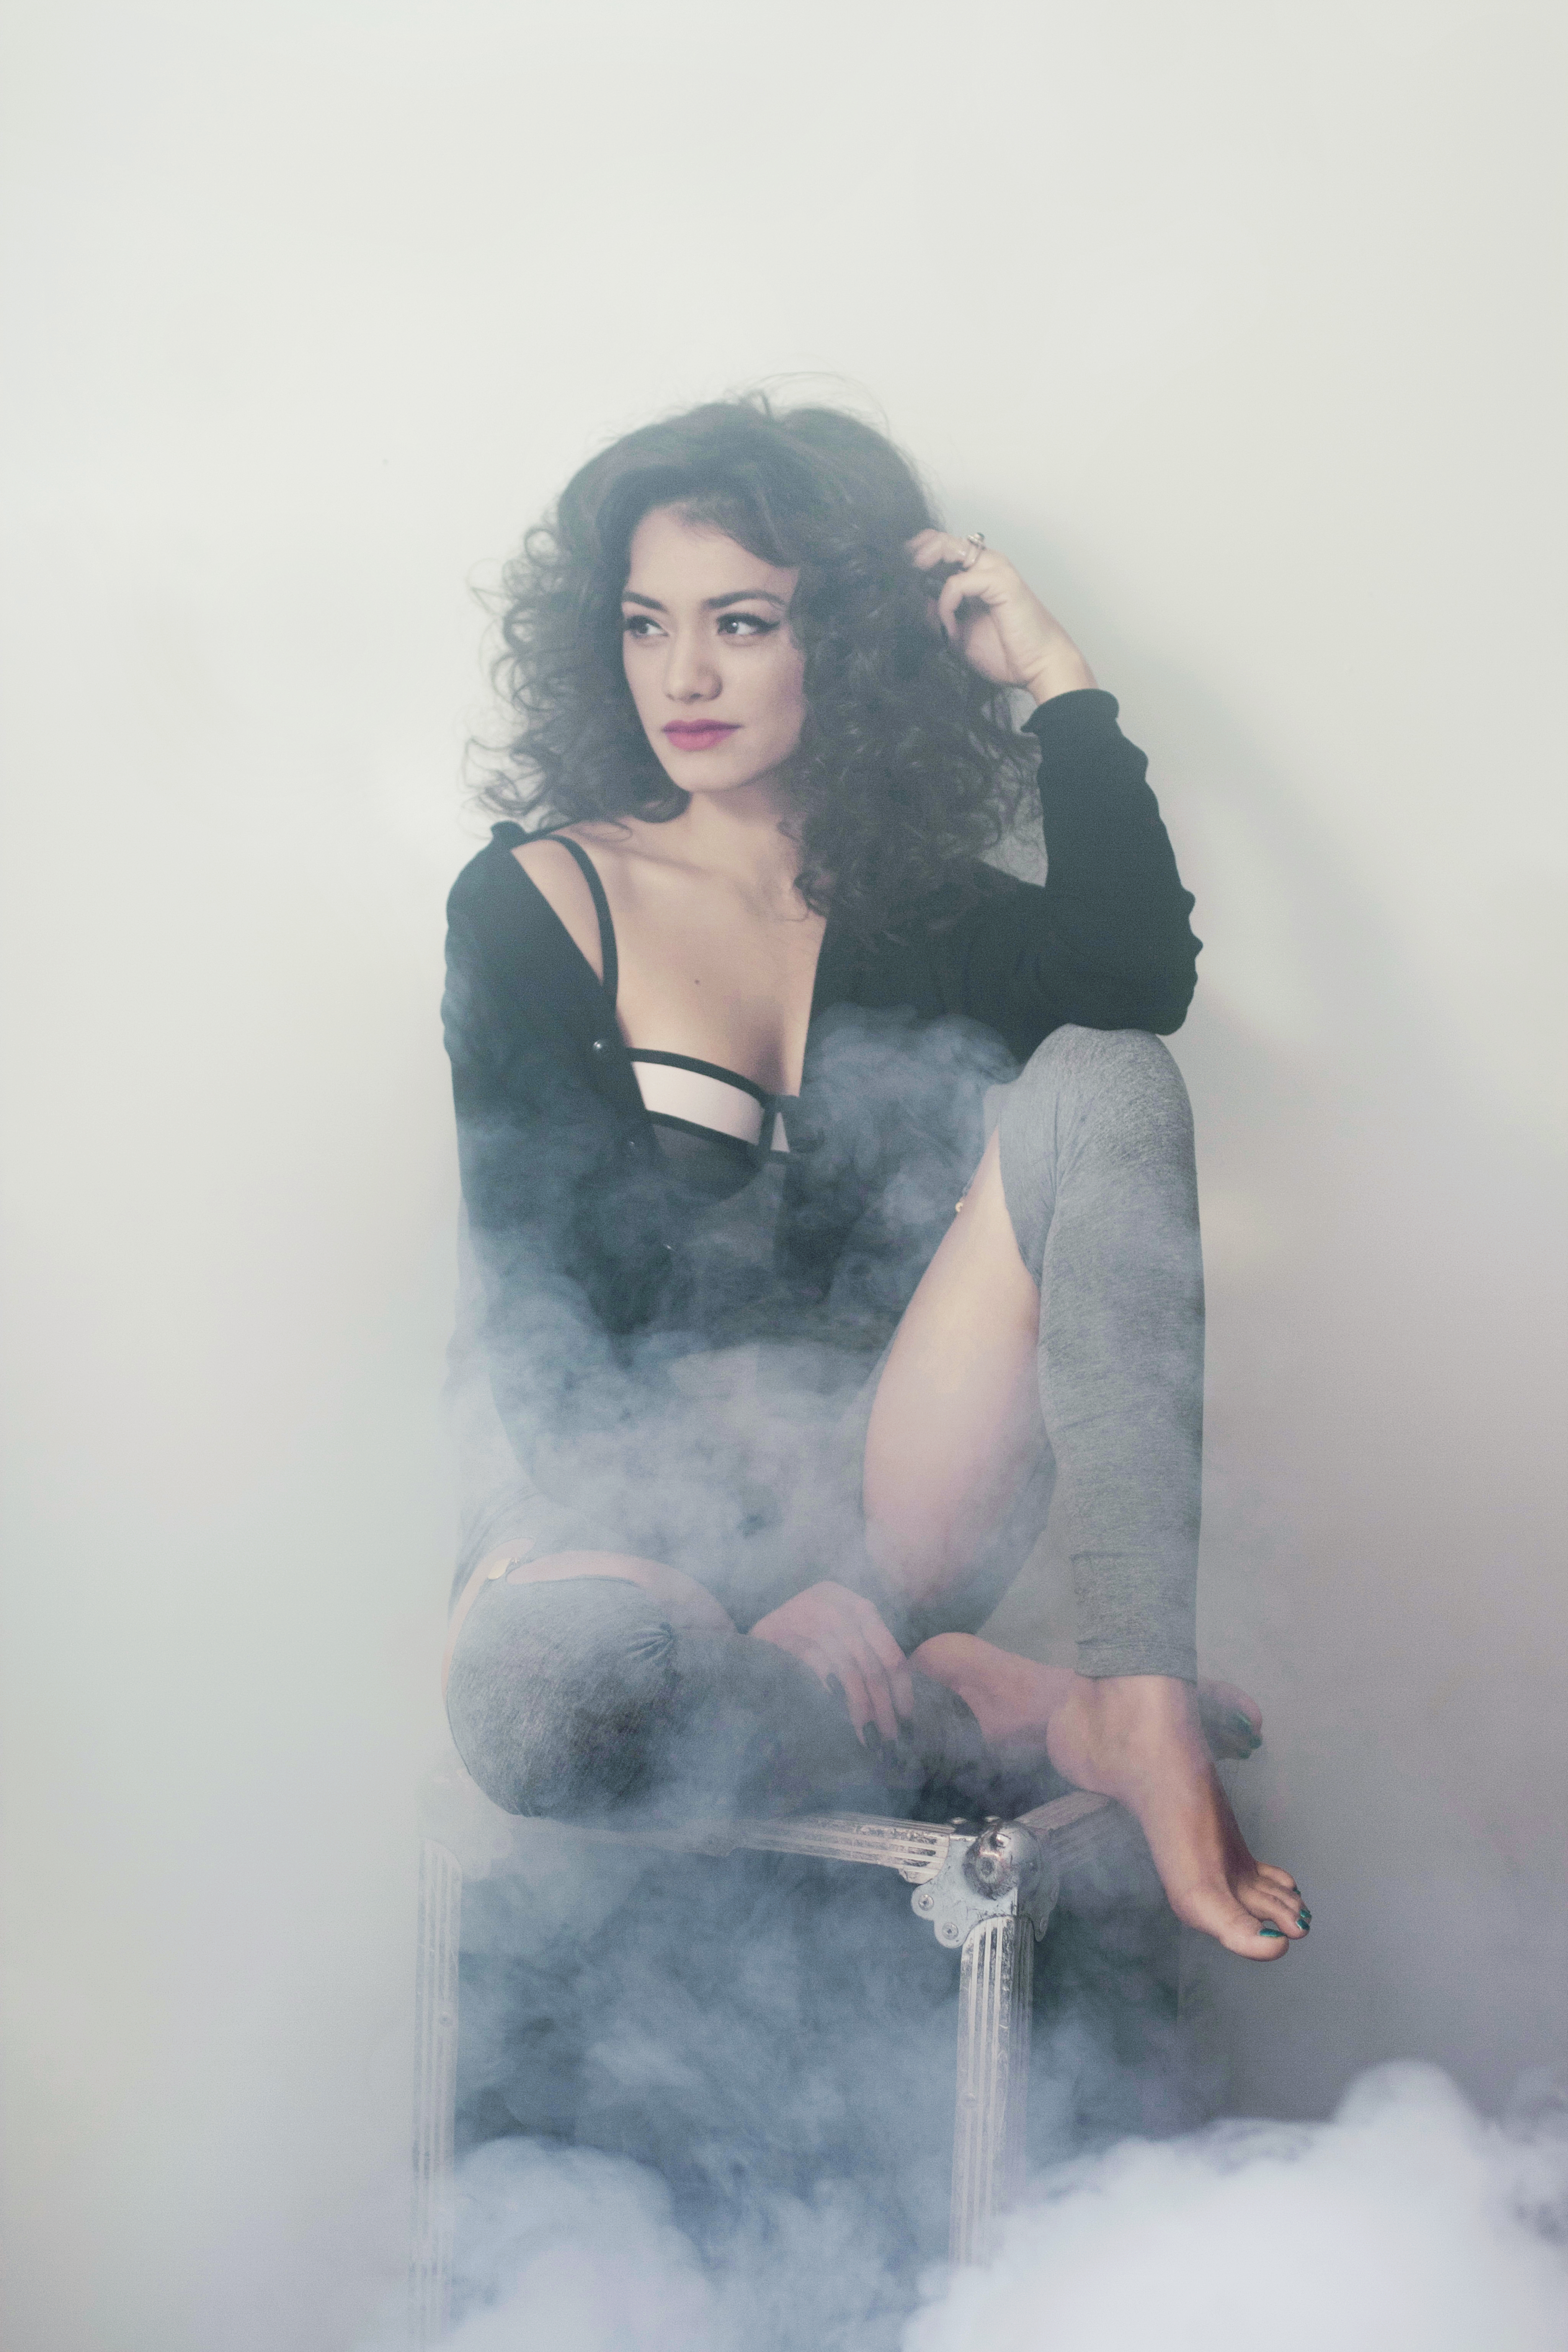 Aylin lanseaza astazi, 14 februarie, cel de-al doilea single de pe viitorul album, Cloud. Single-ul se numeste Chemistry